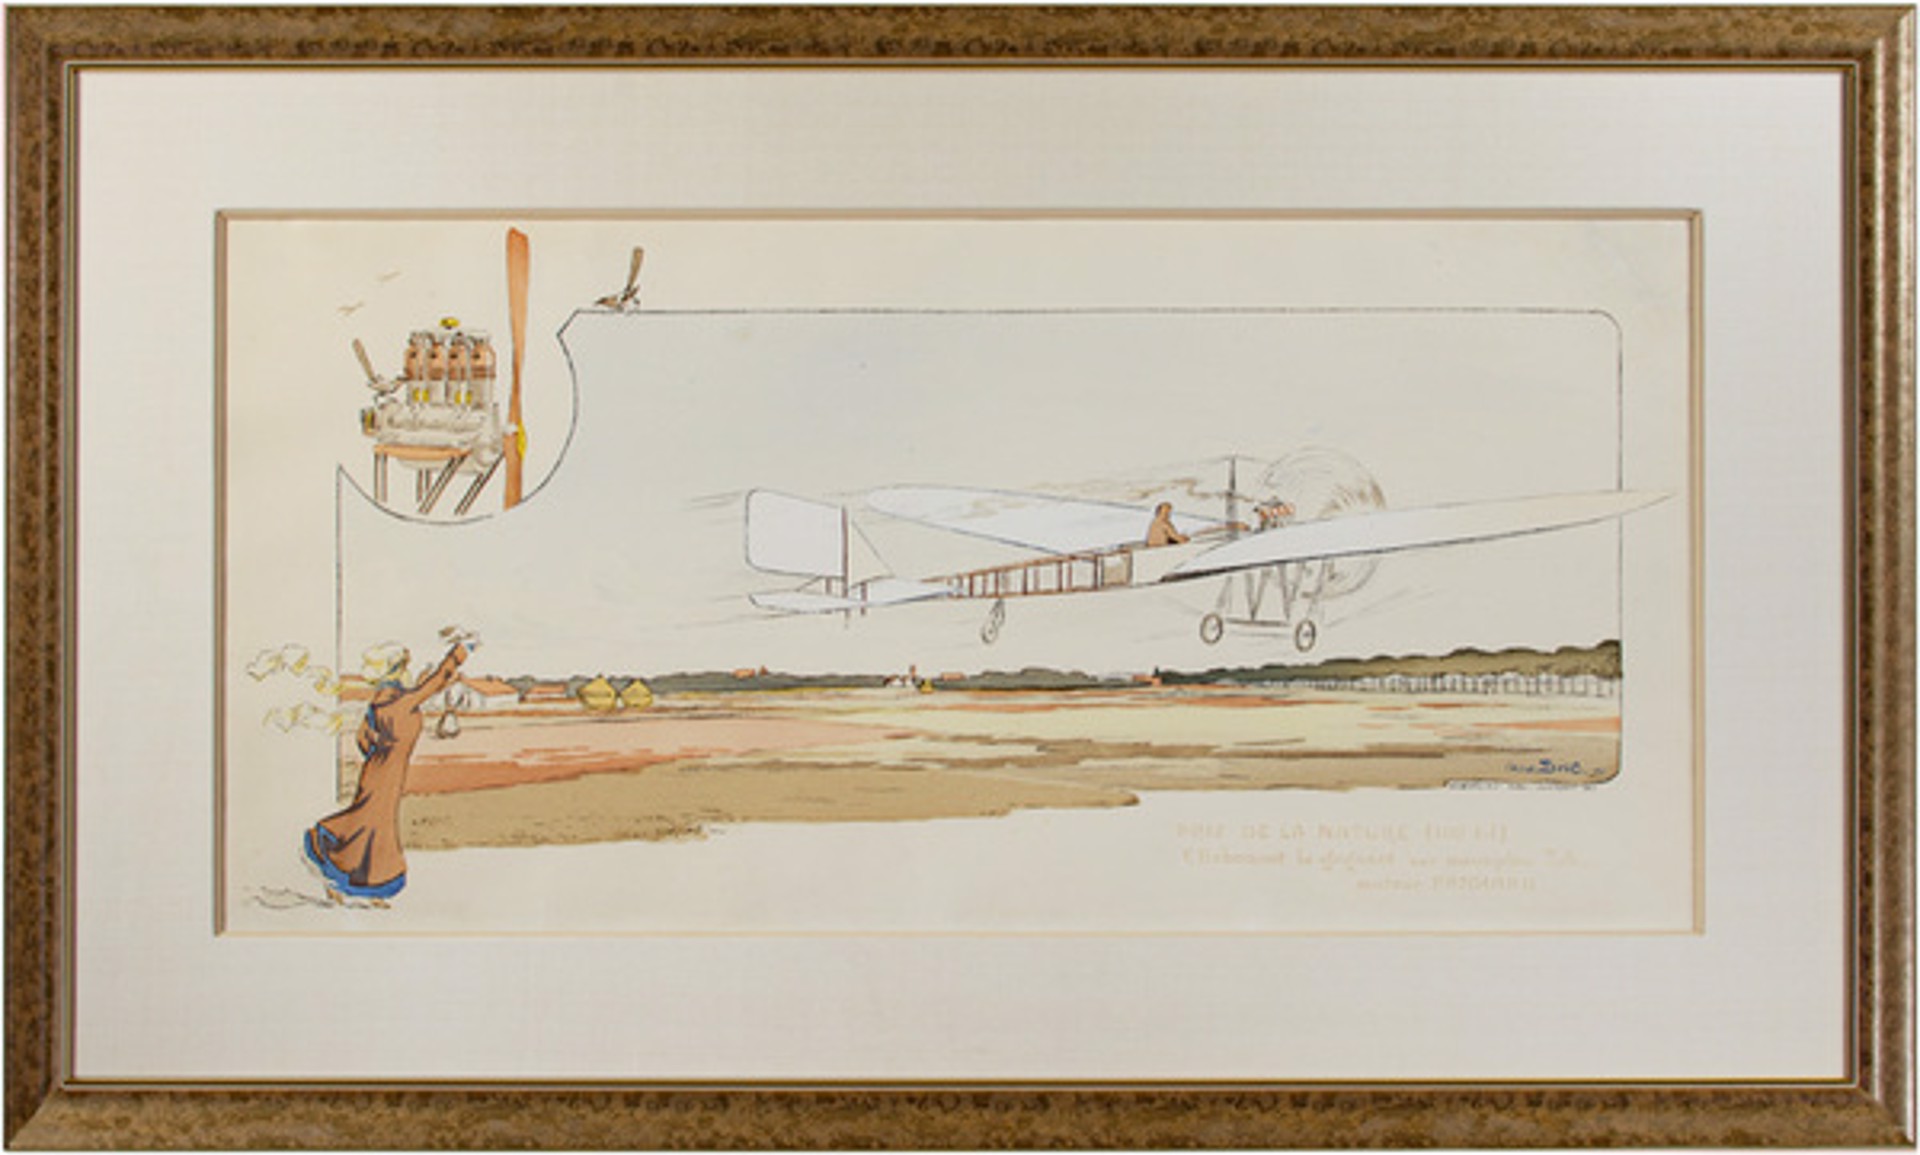 Prix de la Nature (100 Kil) E. Dubonnet le Gagnant Sur Monoplan Tellier Moteur Panhard by George Bric